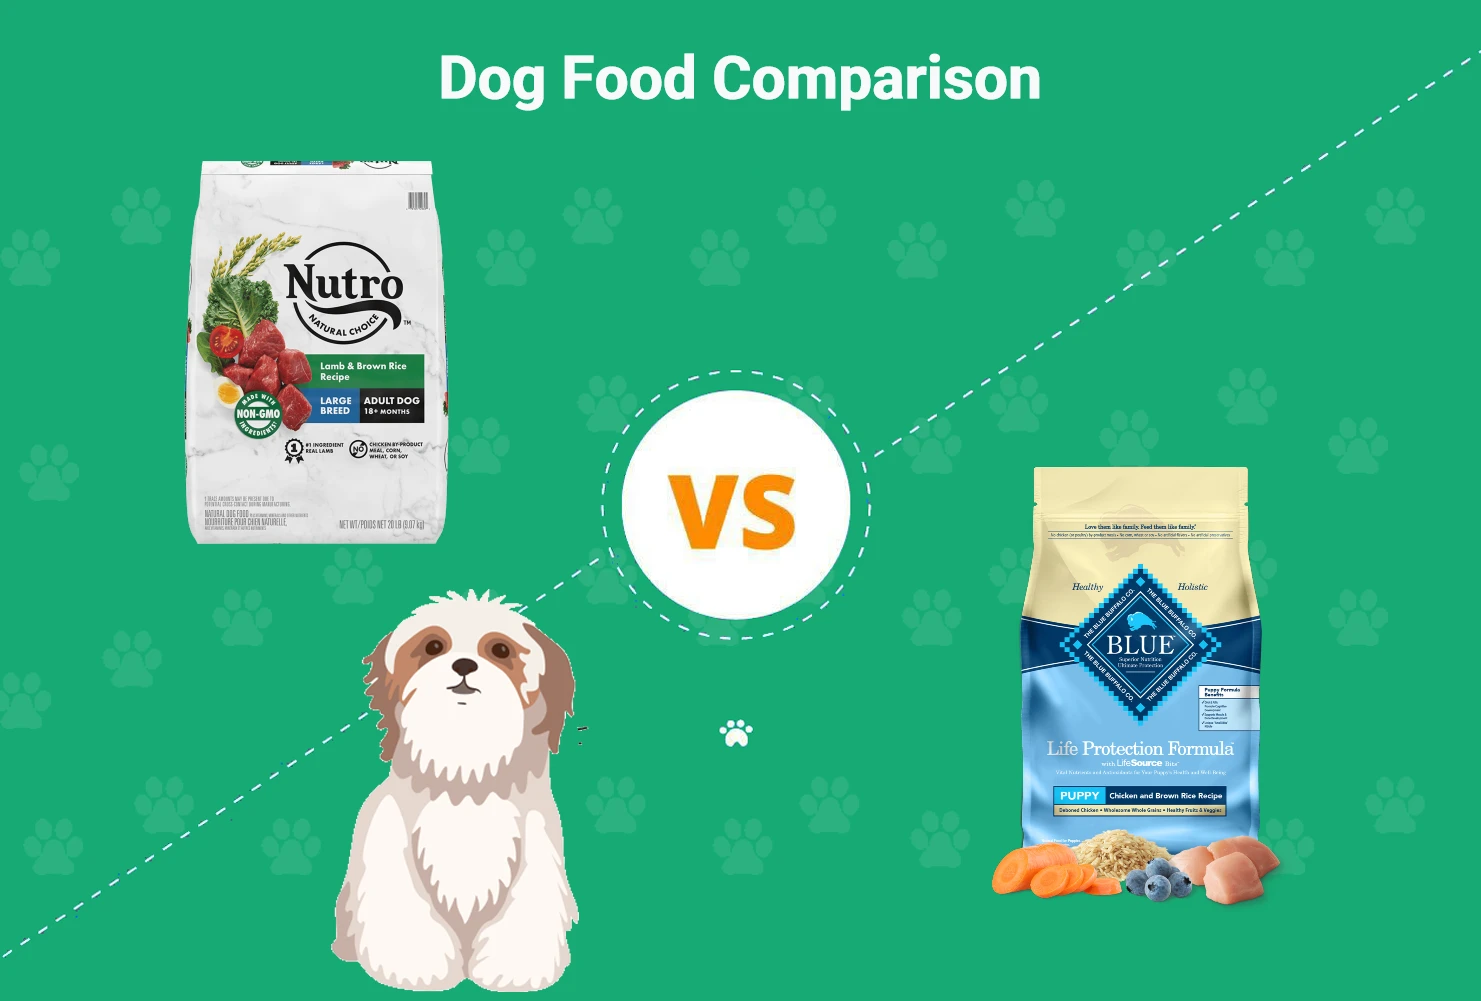 Nutro vs Blue Buffalo Dog Food - Featured Image